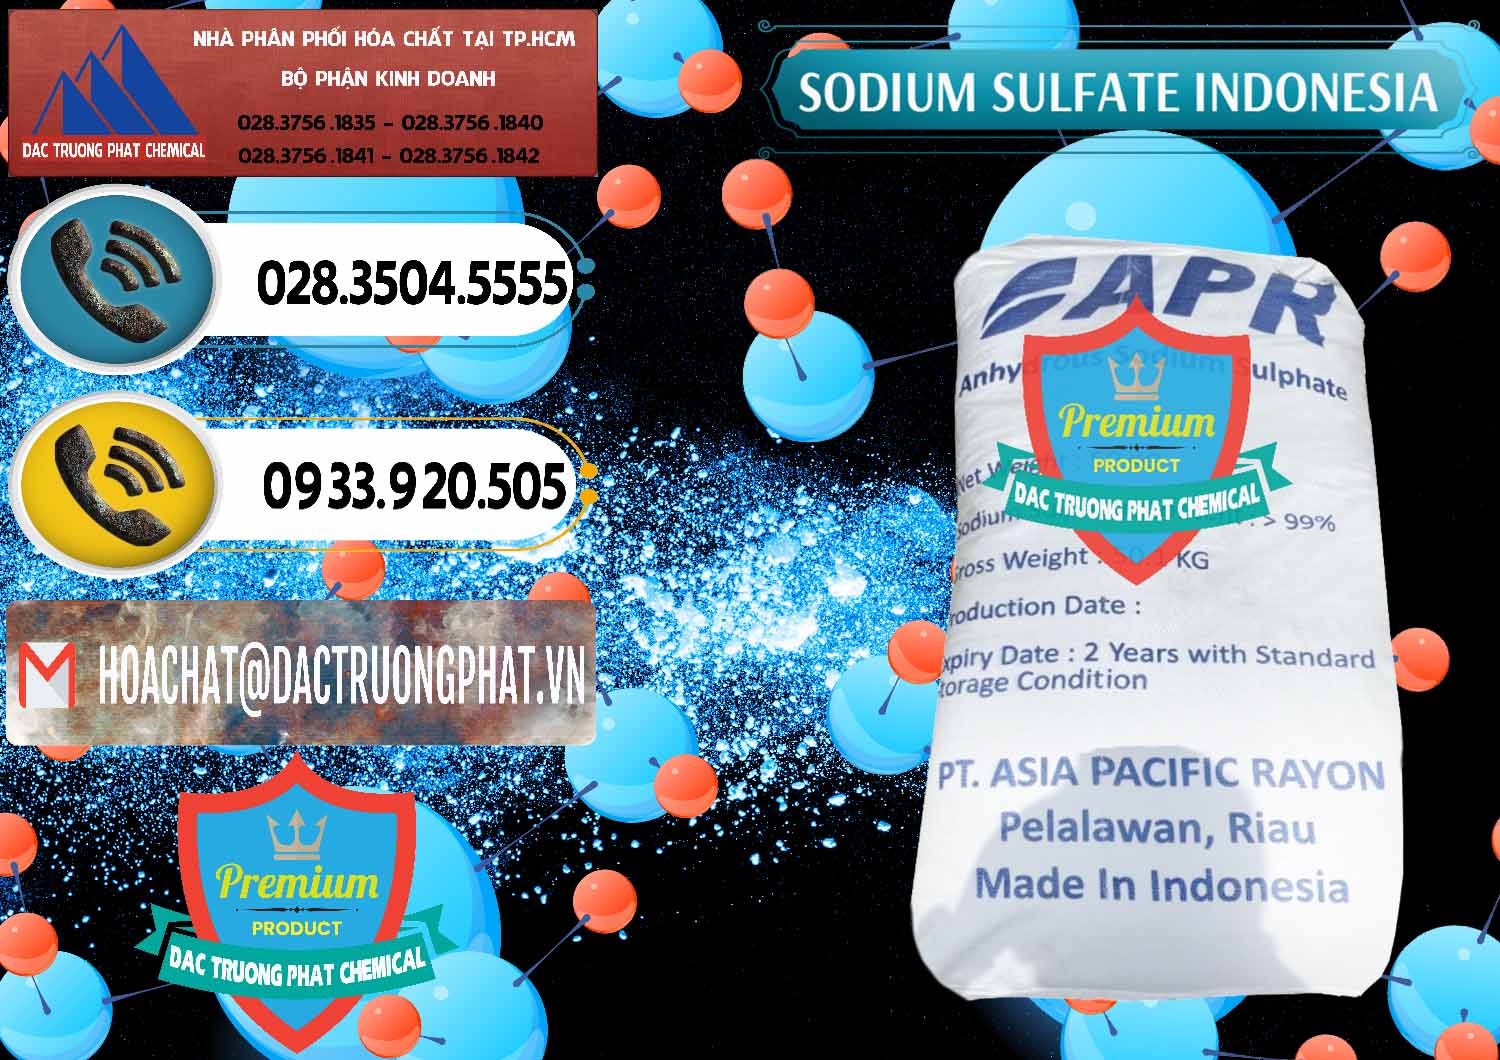 Chuyên bán & cung cấp Sodium Sulphate - Muối Sunfat Na2SO4 APR Indonesia - 0460 - Công ty phân phối _ cung cấp hóa chất tại TP.HCM - hoachatdetnhuom.vn